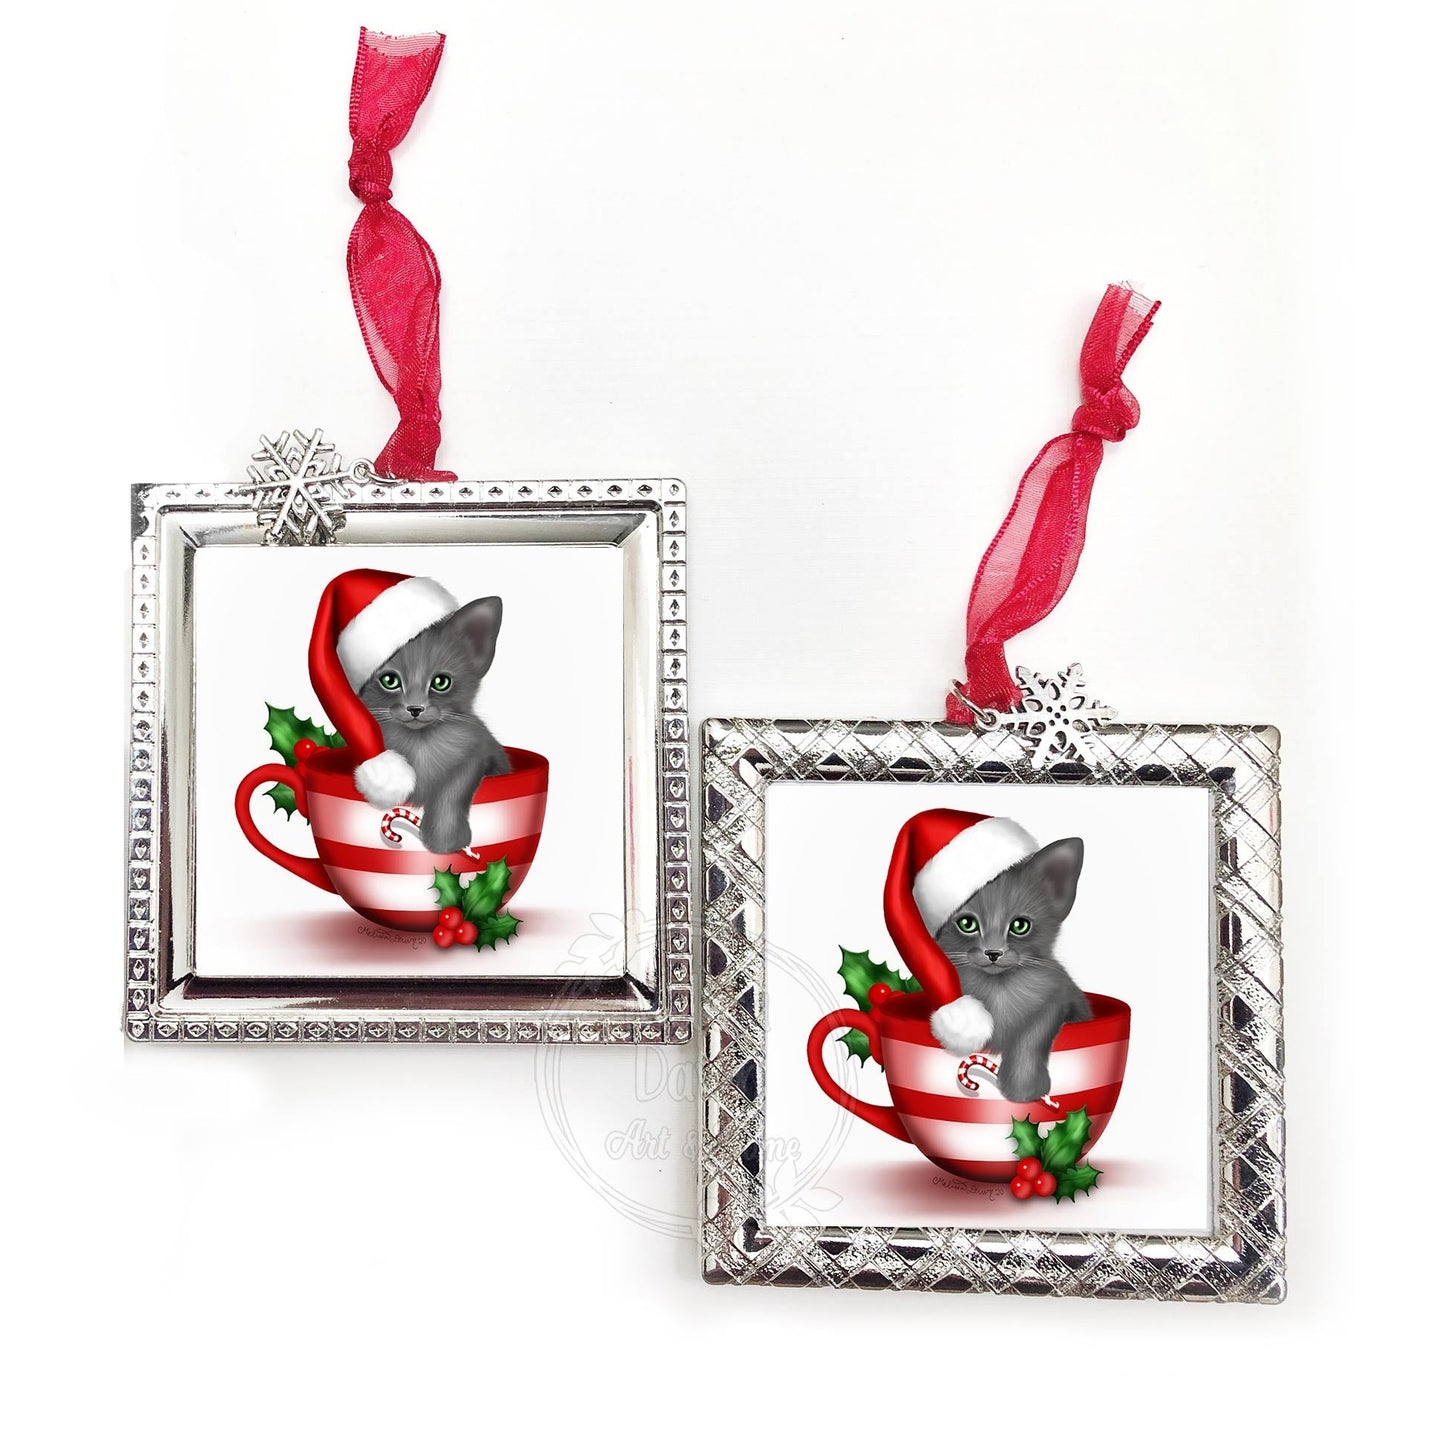 Grey Cat Ornament / Personalized Cat Ornament / Cat Ornament / Cat Lovers Gift / Santa Cat Ornament / Russian Blue Cat / Gray Cat Ornament